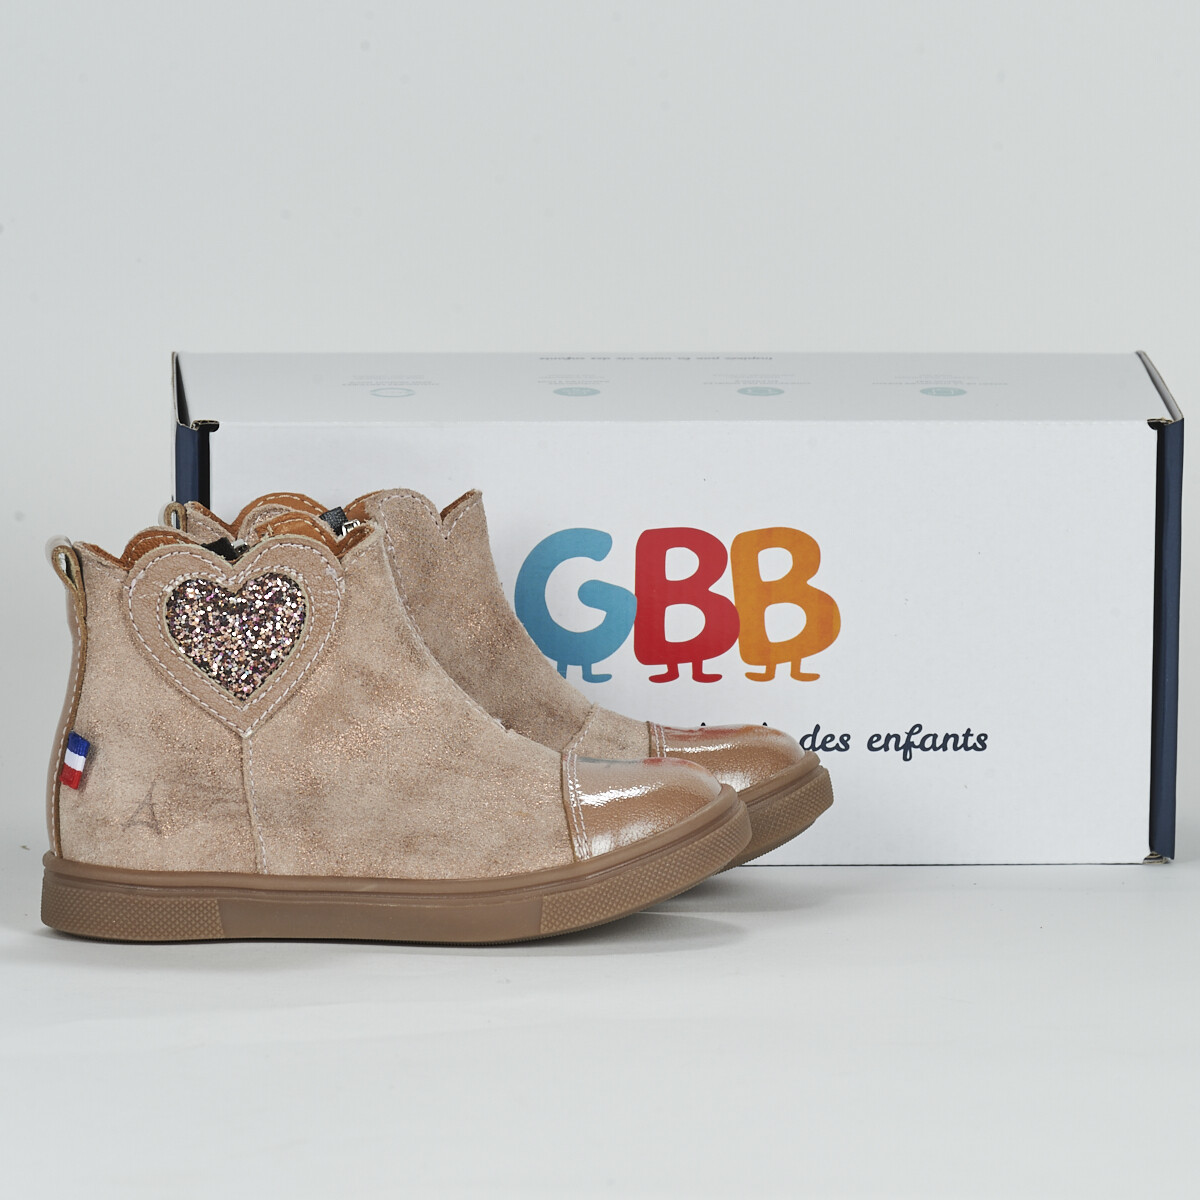 Μπότες GBB -